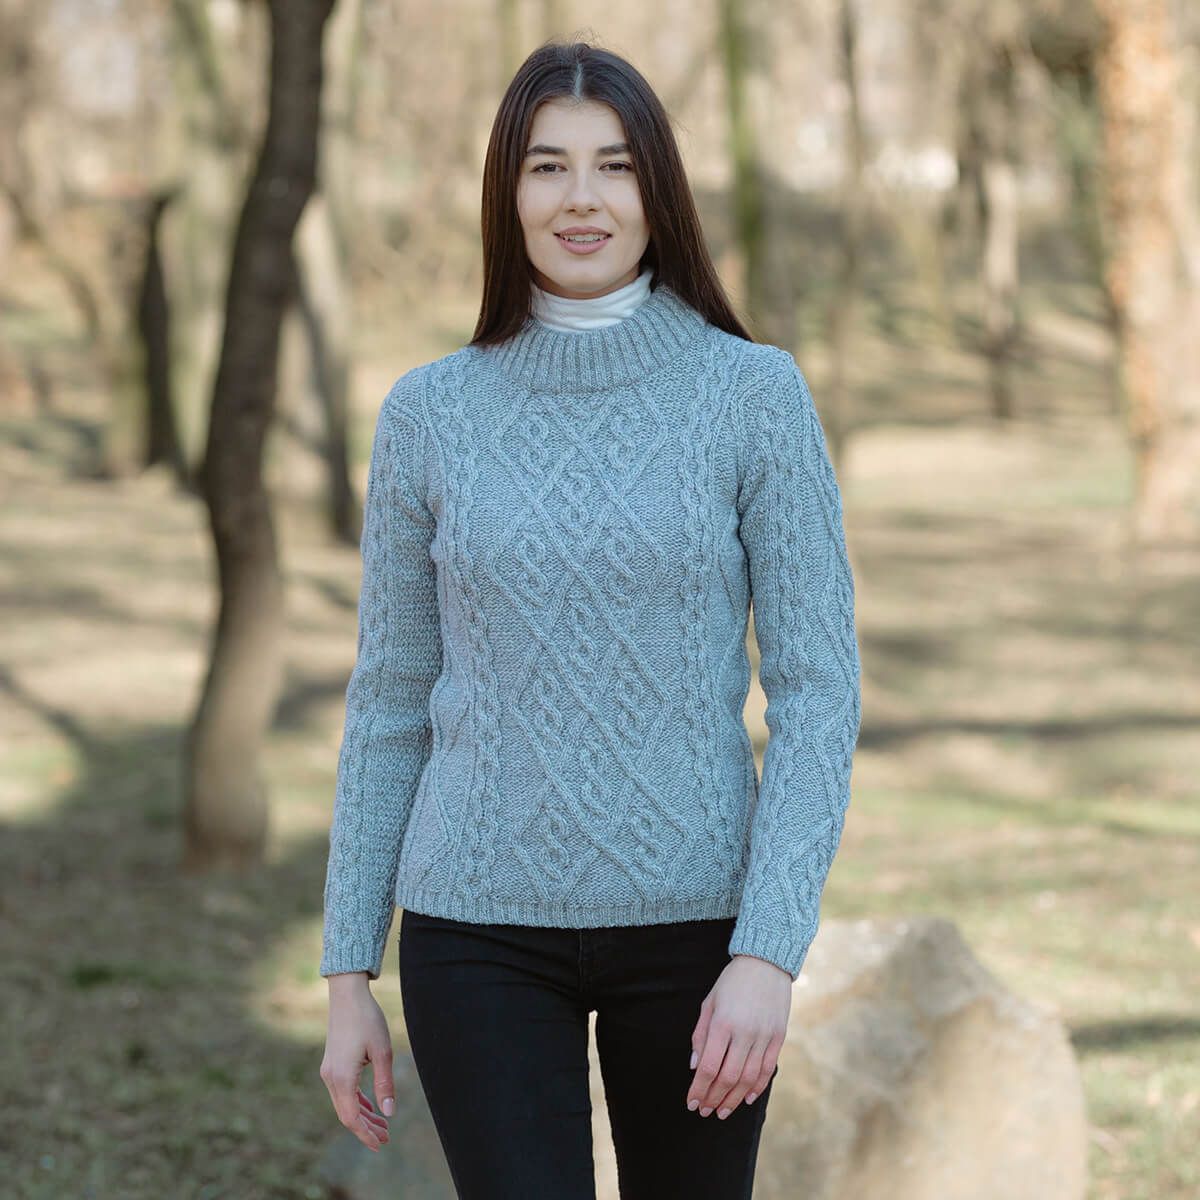 Women's Wool Cable Knit Aran Sweater